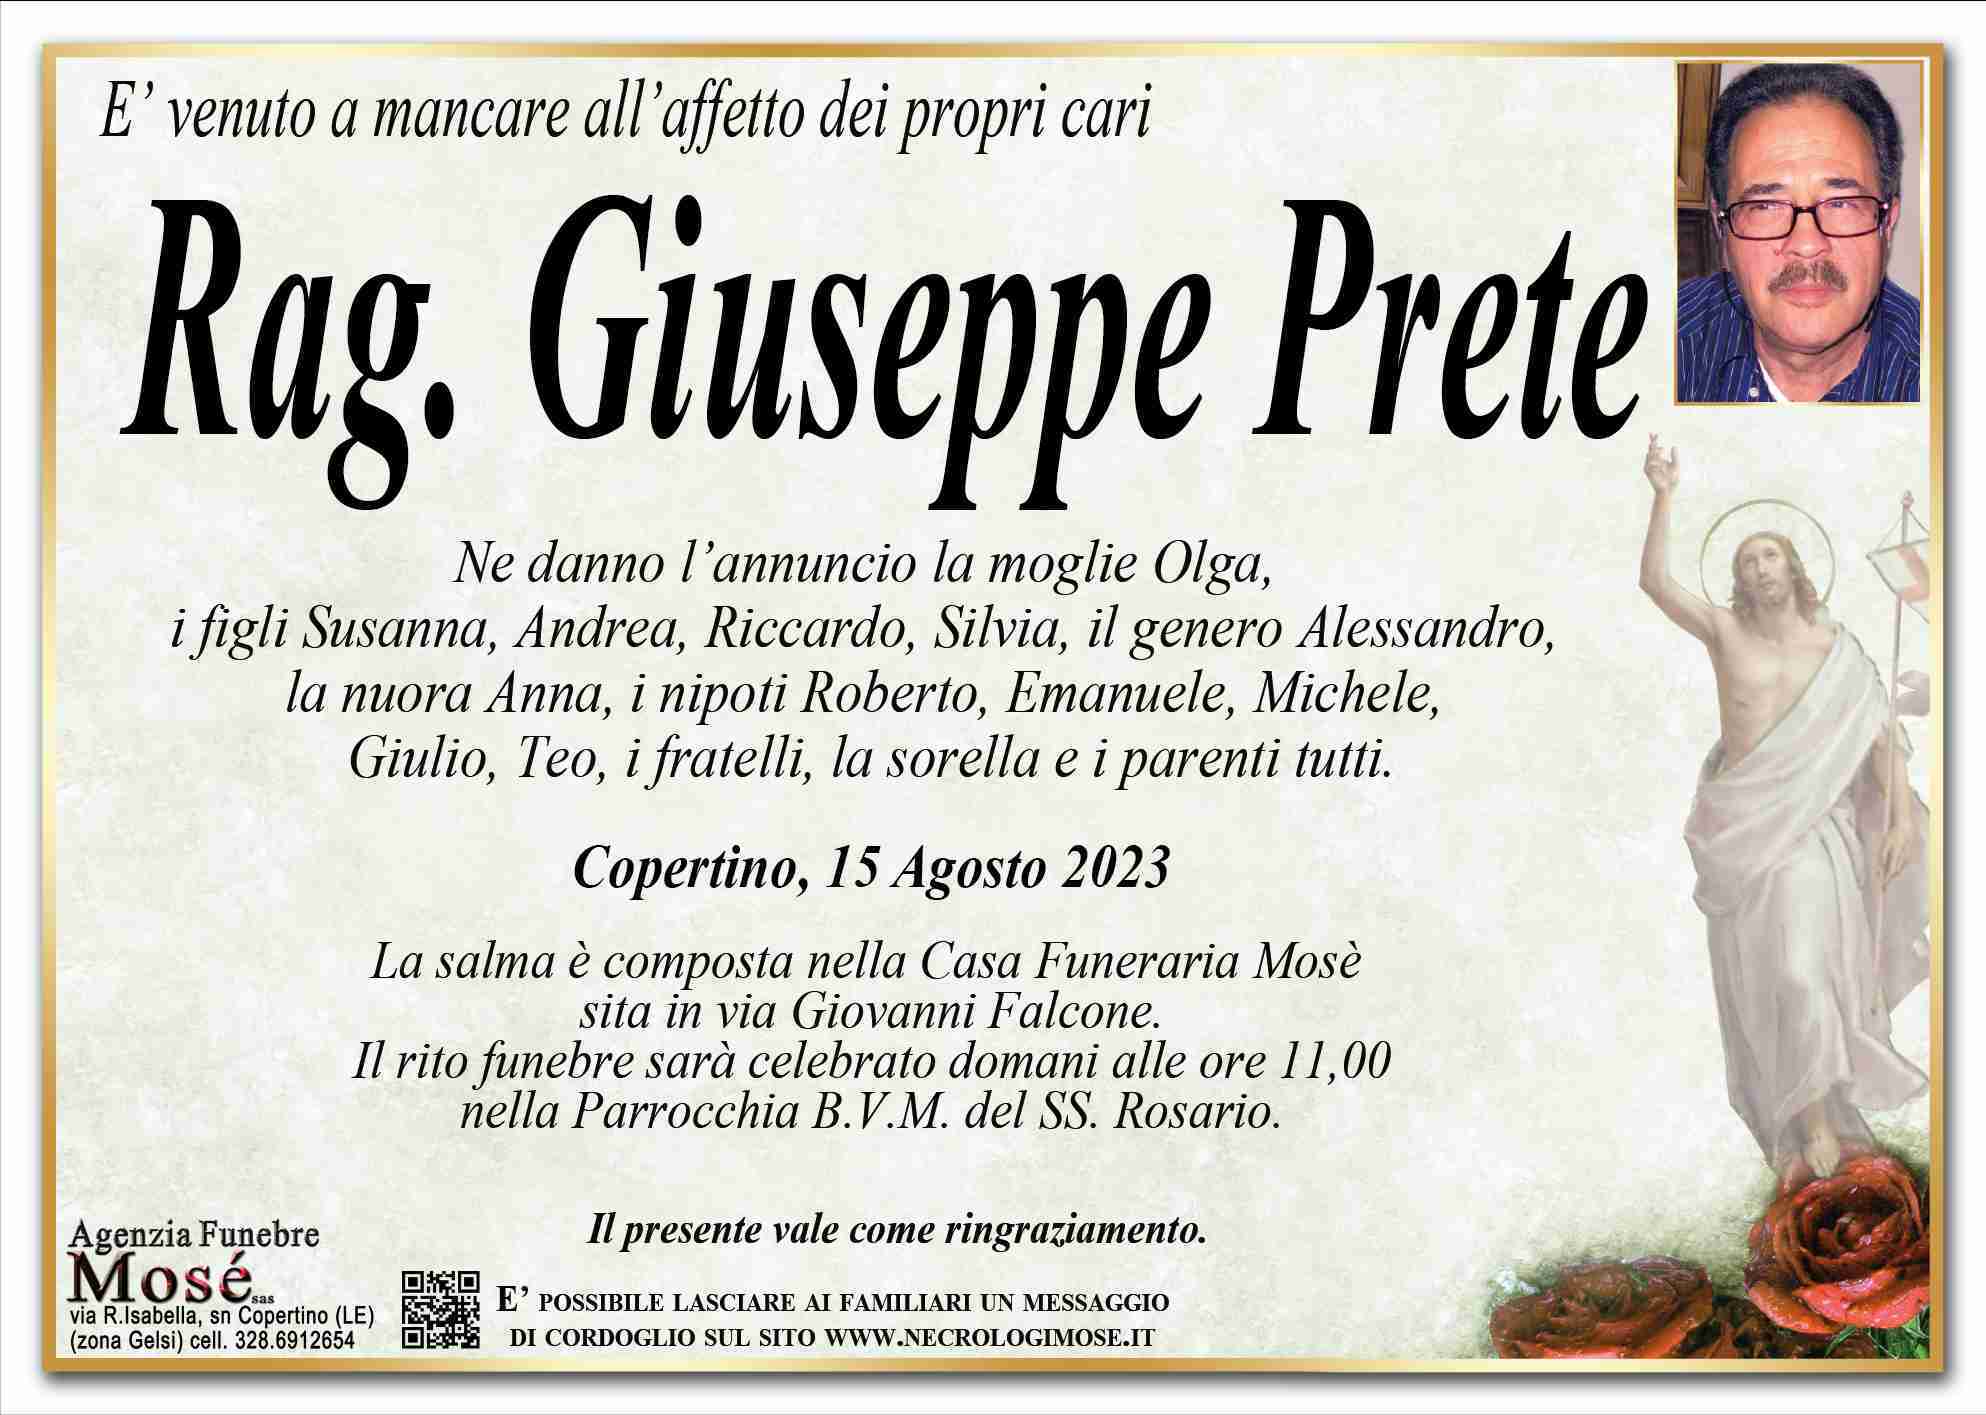 Giuseppe Prete